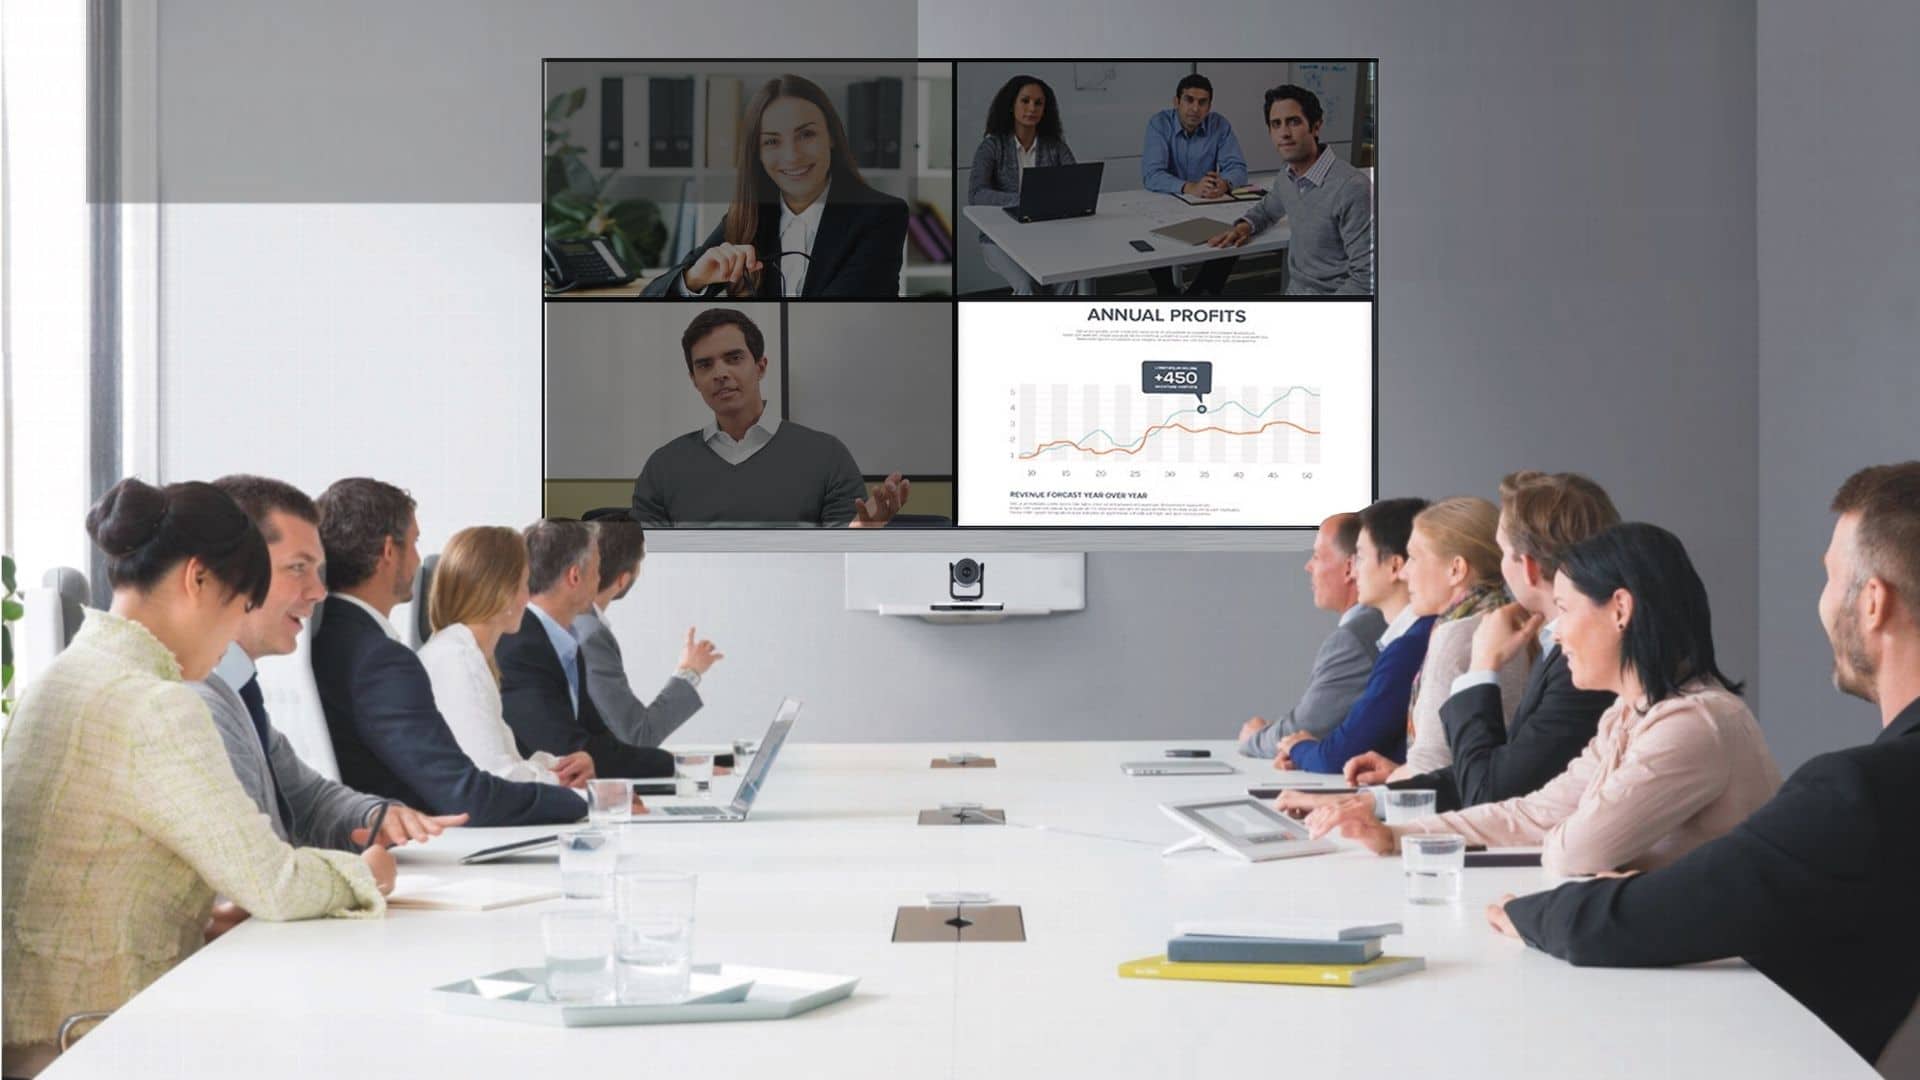 Videokonferenz und Konferenzräume benötigen qualittiv hochwertige Kameras und Beleuchtung. conference-tv bietet beides an